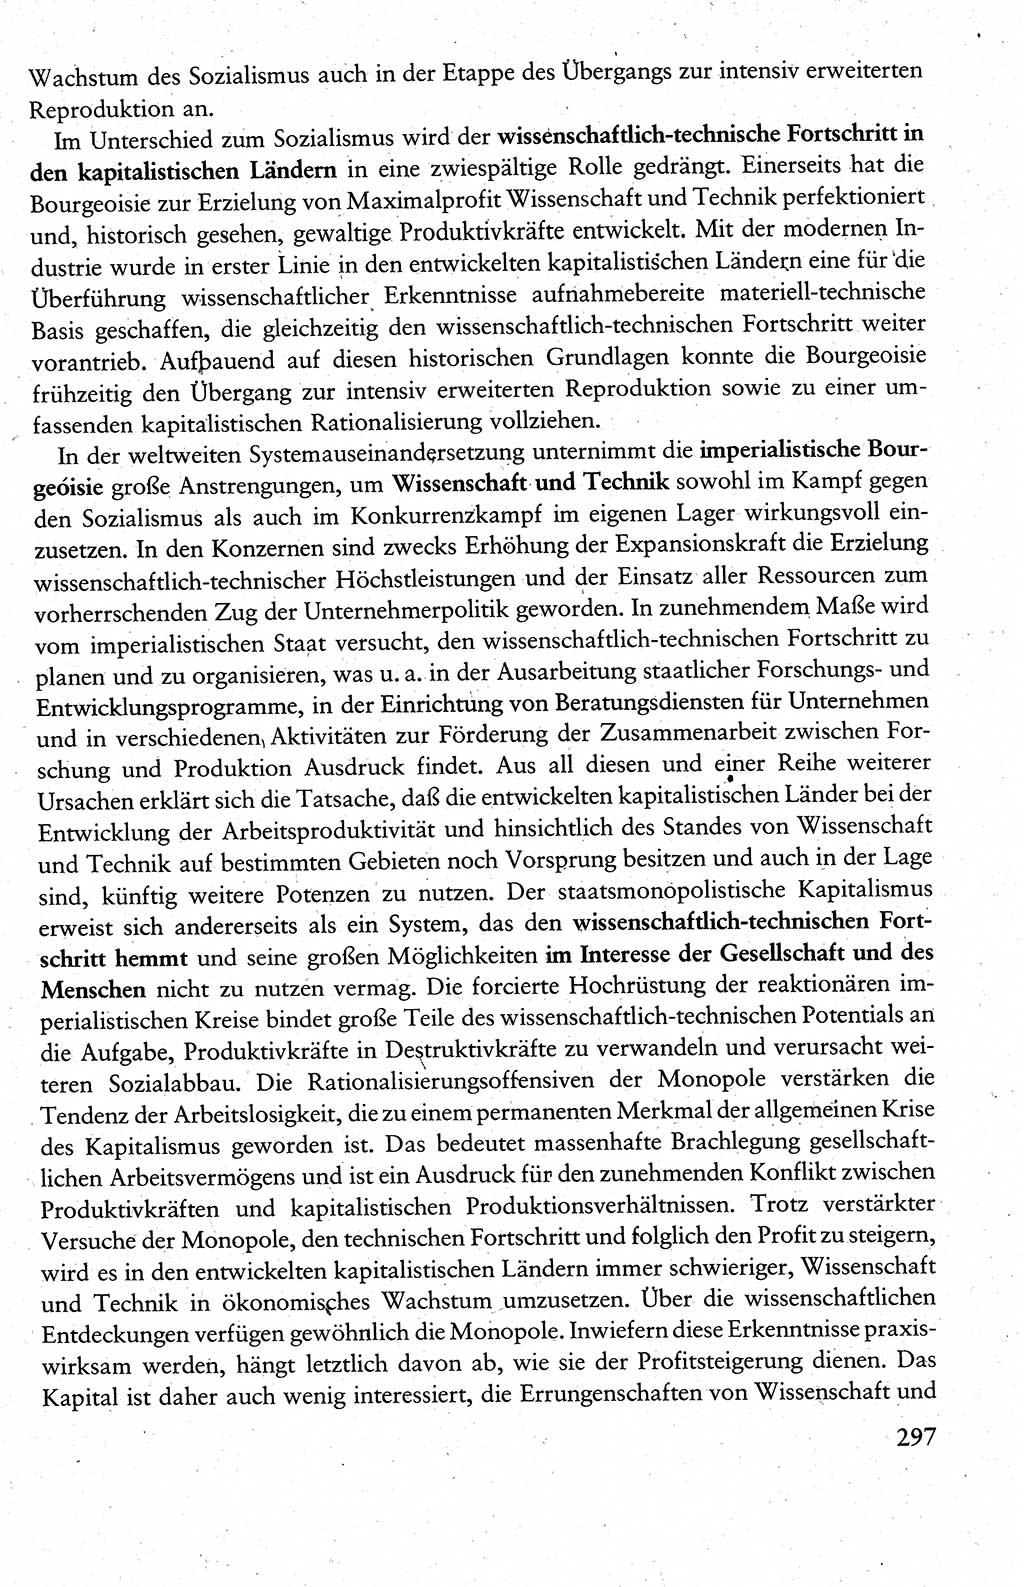 Wissenschaftlicher Kommunismus [Deutsche Demokratische Republik (DDR)], Lehrbuch für das marxistisch-leninistische Grundlagenstudium 1983, Seite 297 (Wiss. Komm. DDR Lb. 1983, S. 297)